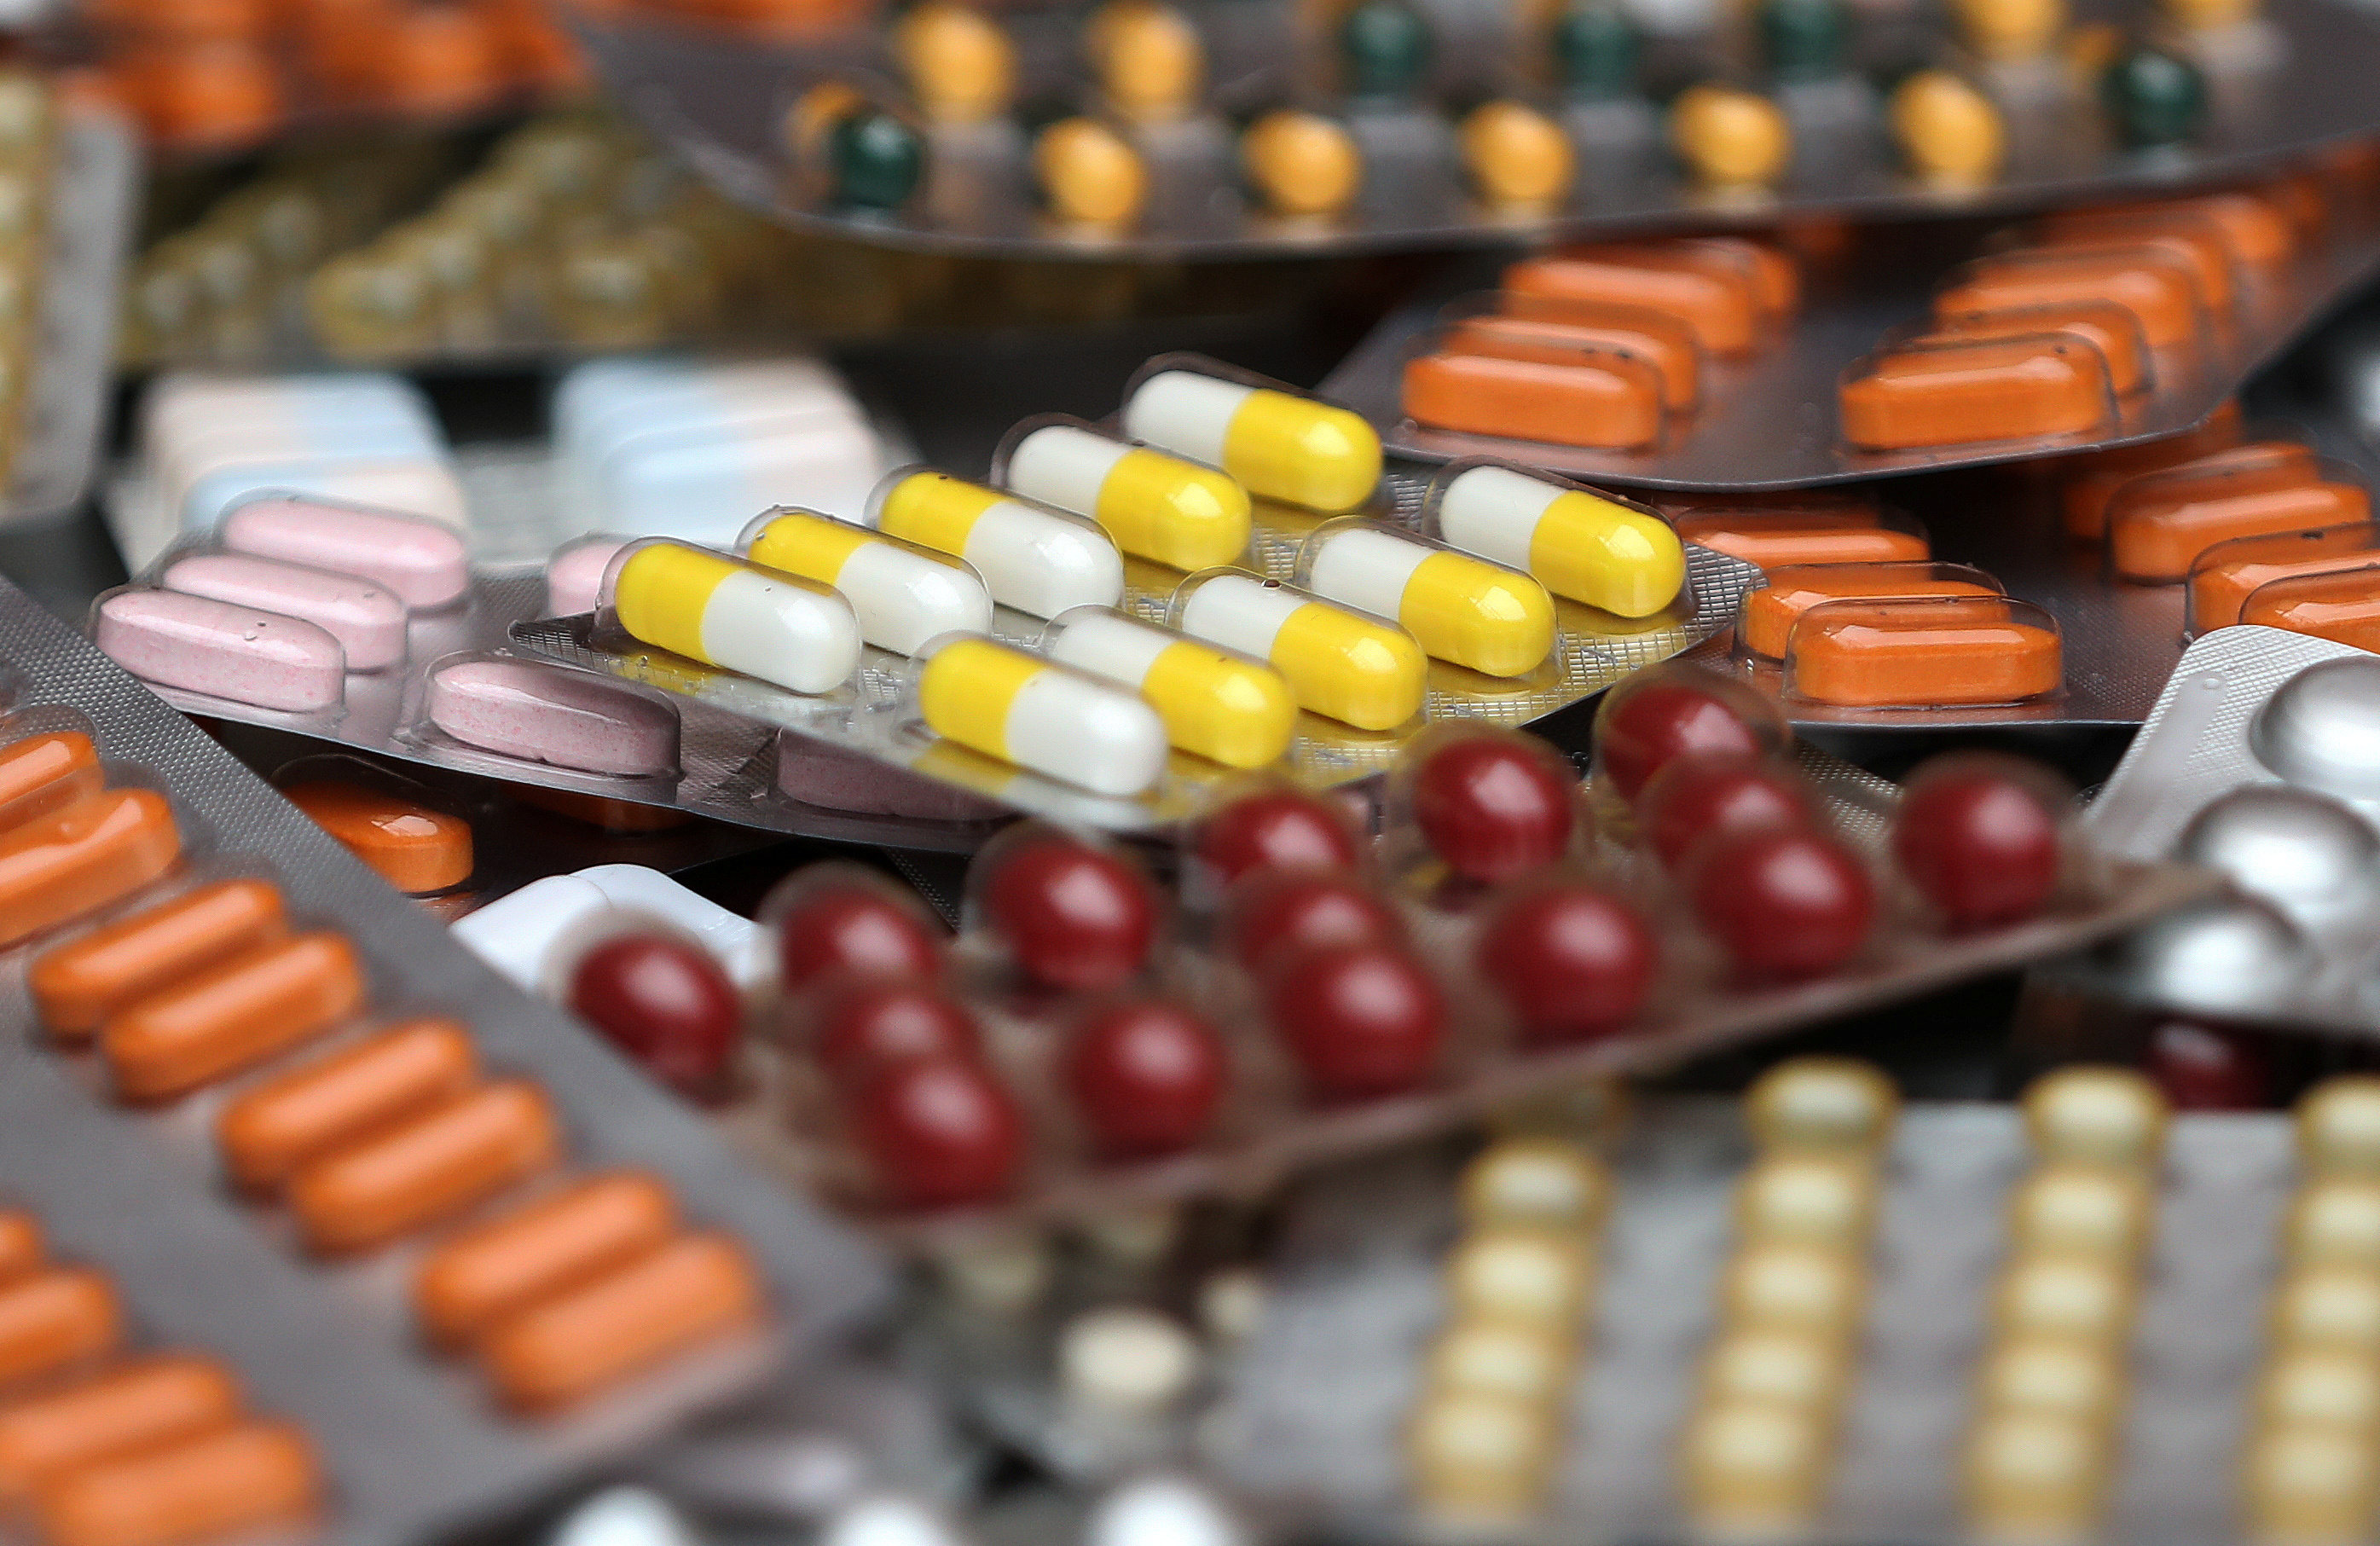 Πλεύρης για ελλείψεις φαρμάκων: Δεν υπάρχει λόγος ανησυχίας, λύση τα γενόσημα